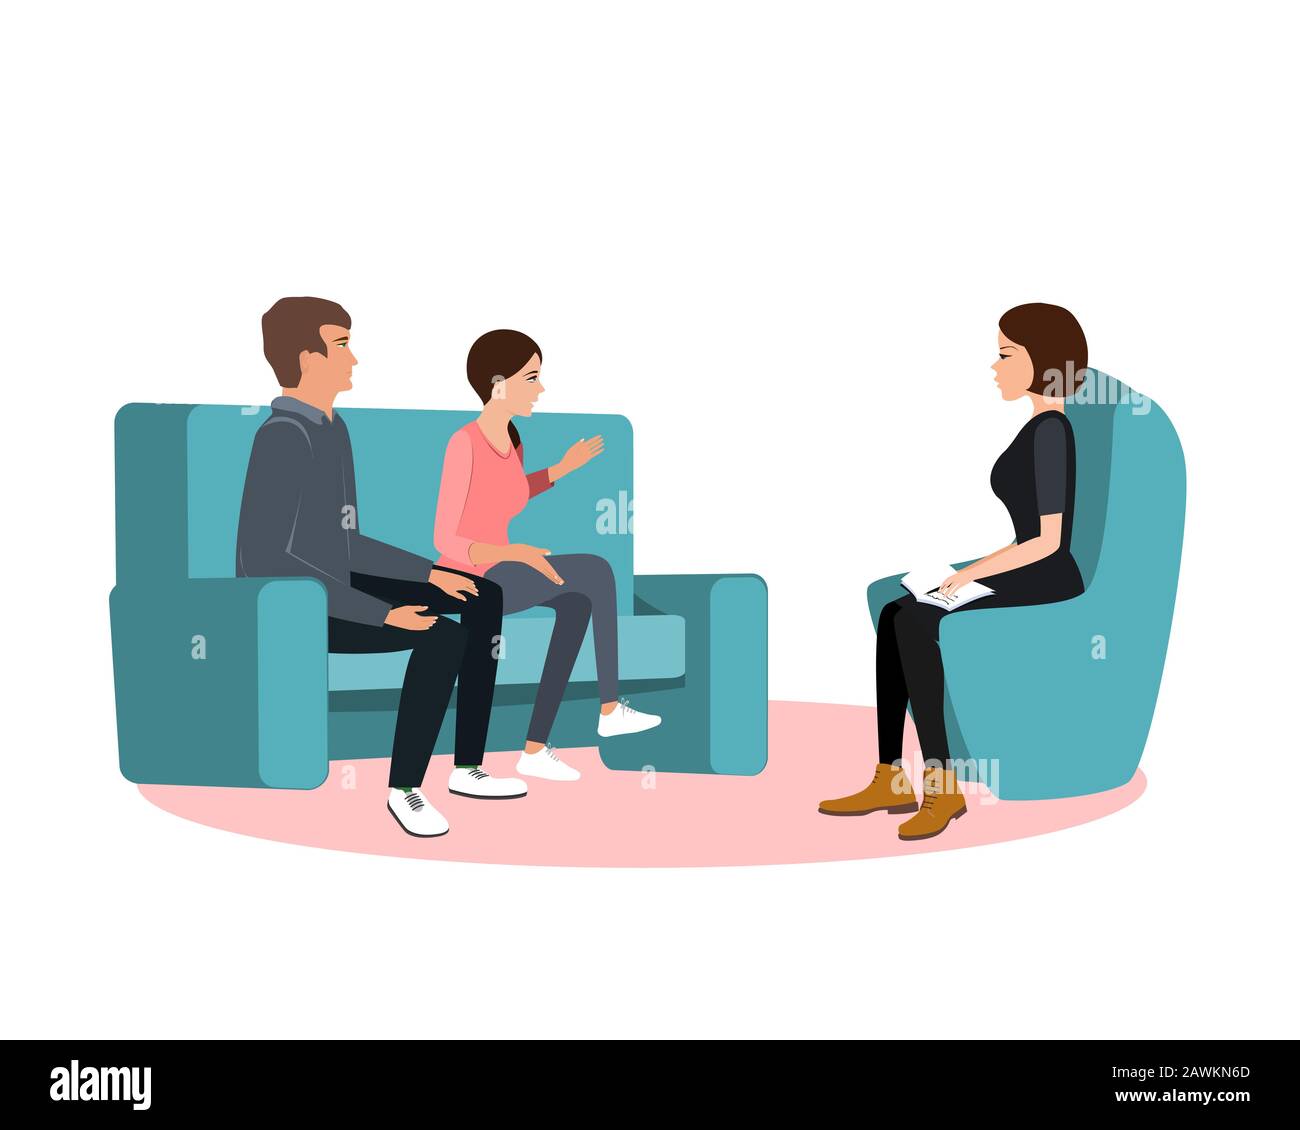 Ehepaar auf Sofa und Psychologin oder Psychotherapeutin sitzen vor ihnen. Ehekrise, Familienkonflikt, Beziehungsproblem Stock Vektor